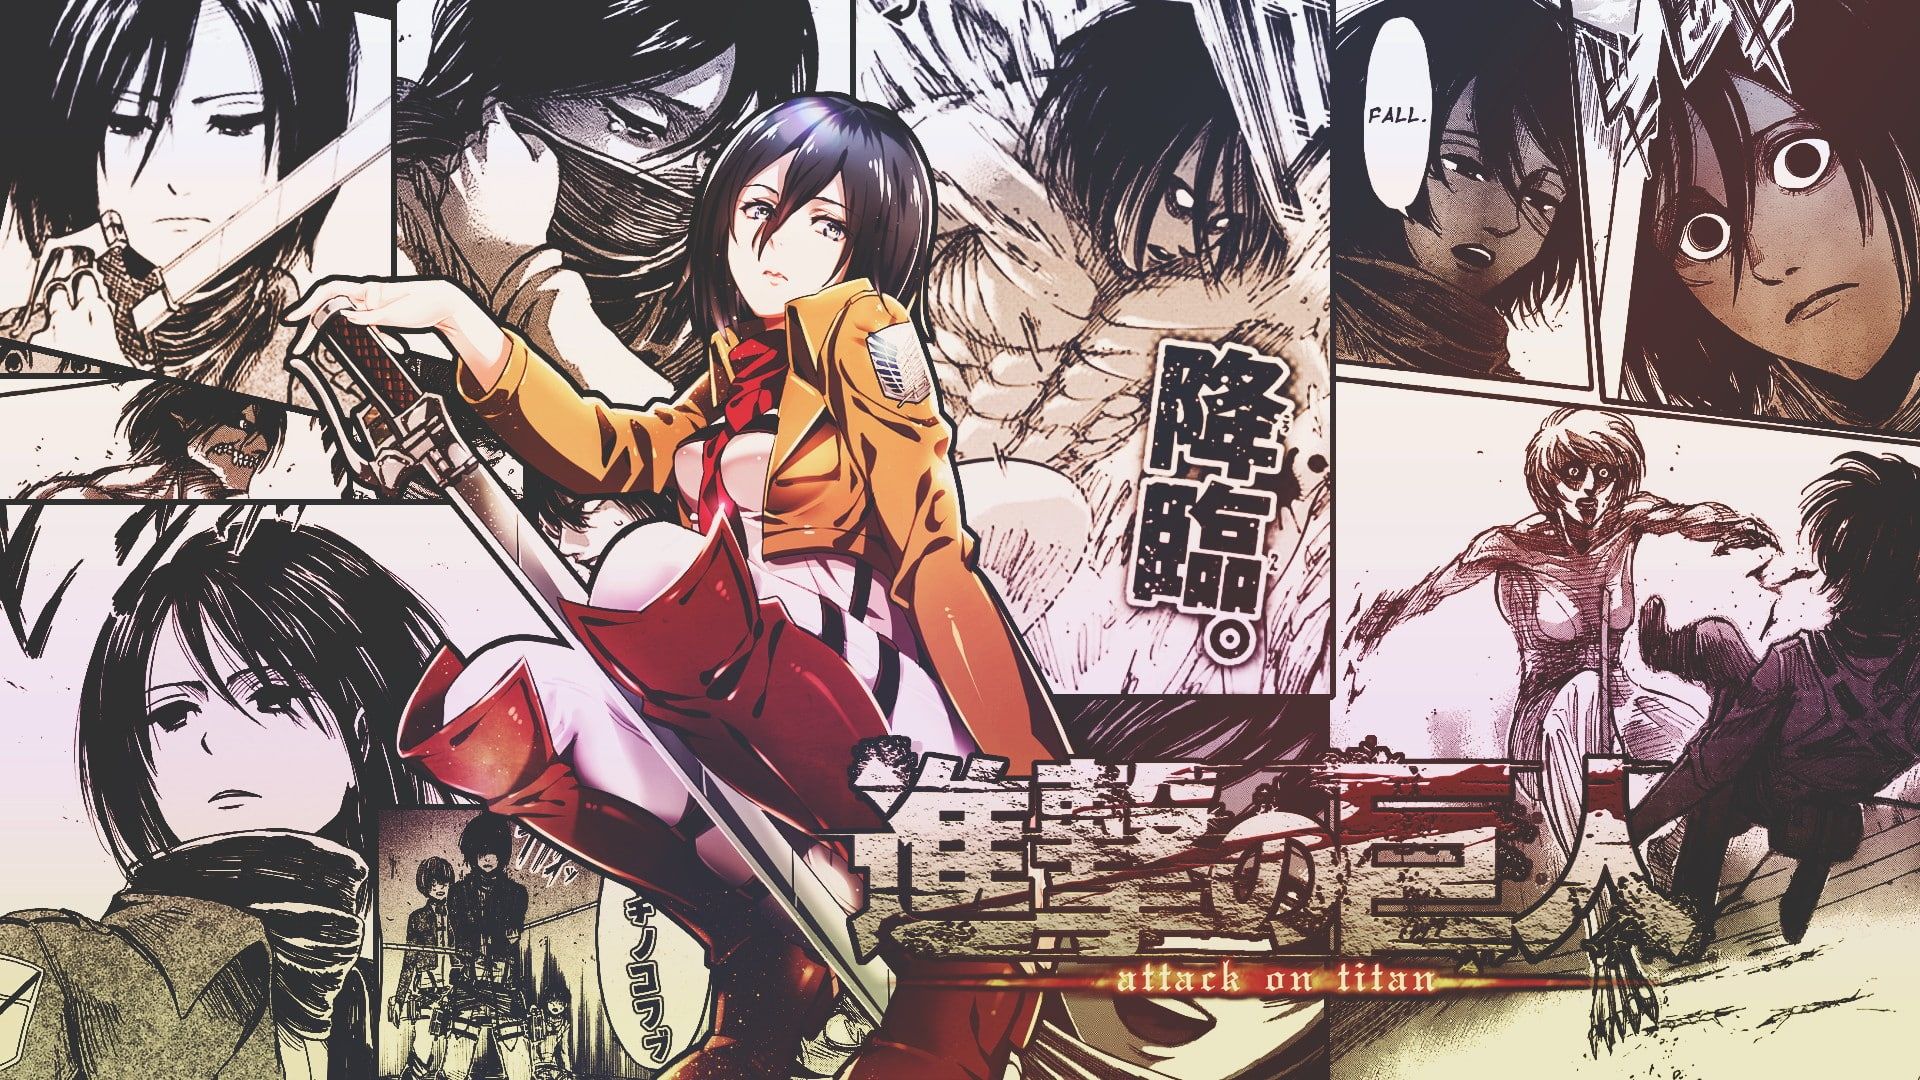 15+] Attack On Titan Manga Desktop Wallpapers - WallpaperSafari